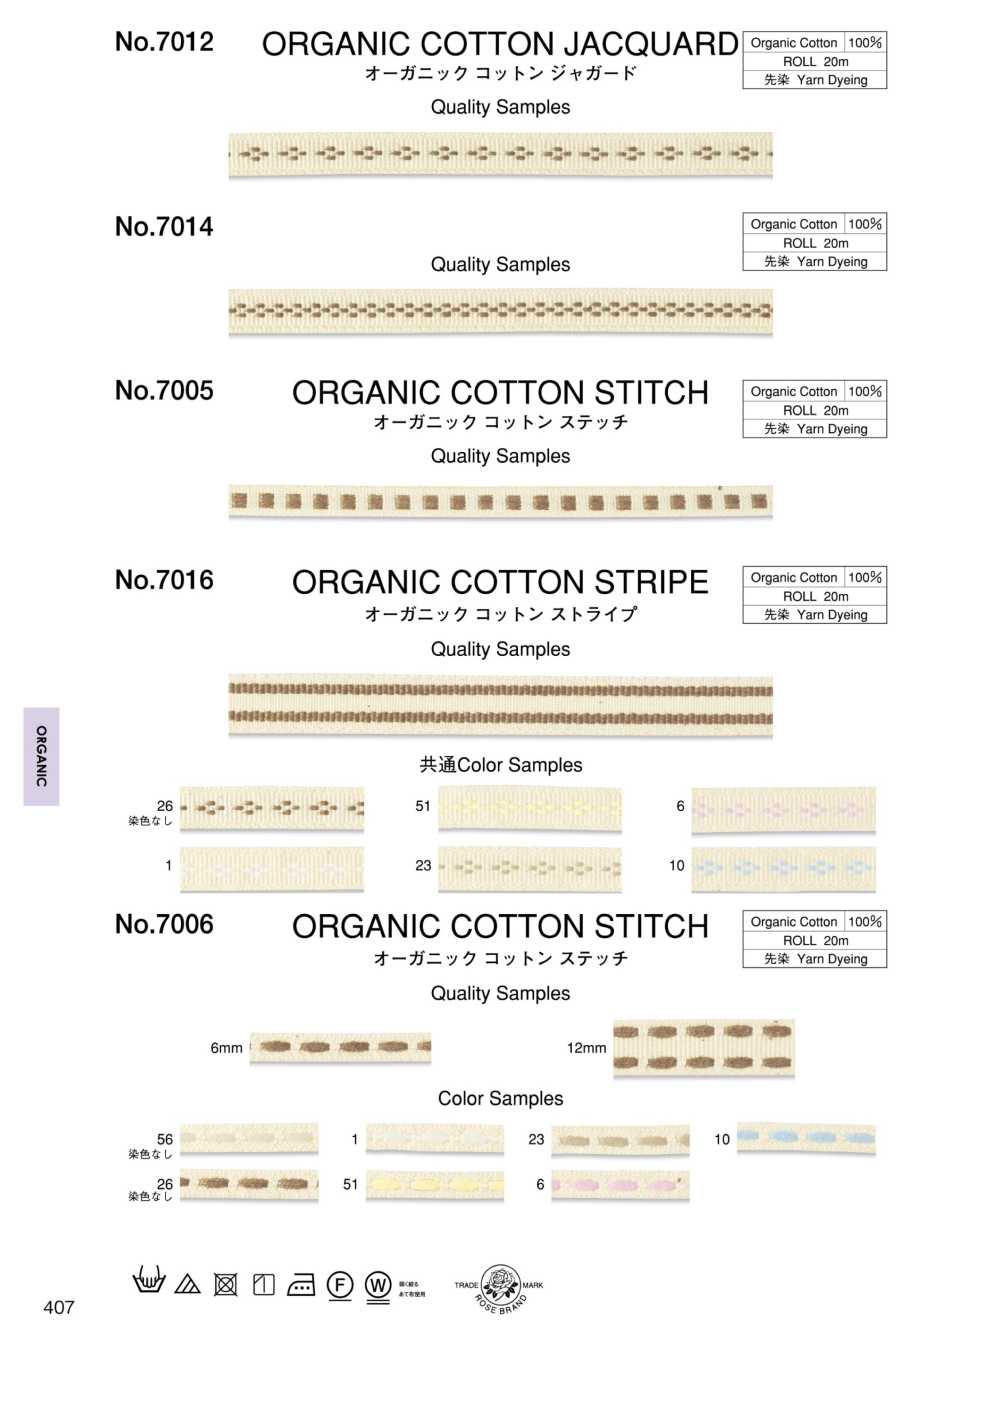 7006 Coutures En Coton Biologique[Ruban Ruban Cordon] ROSE BRAND (Marushin)